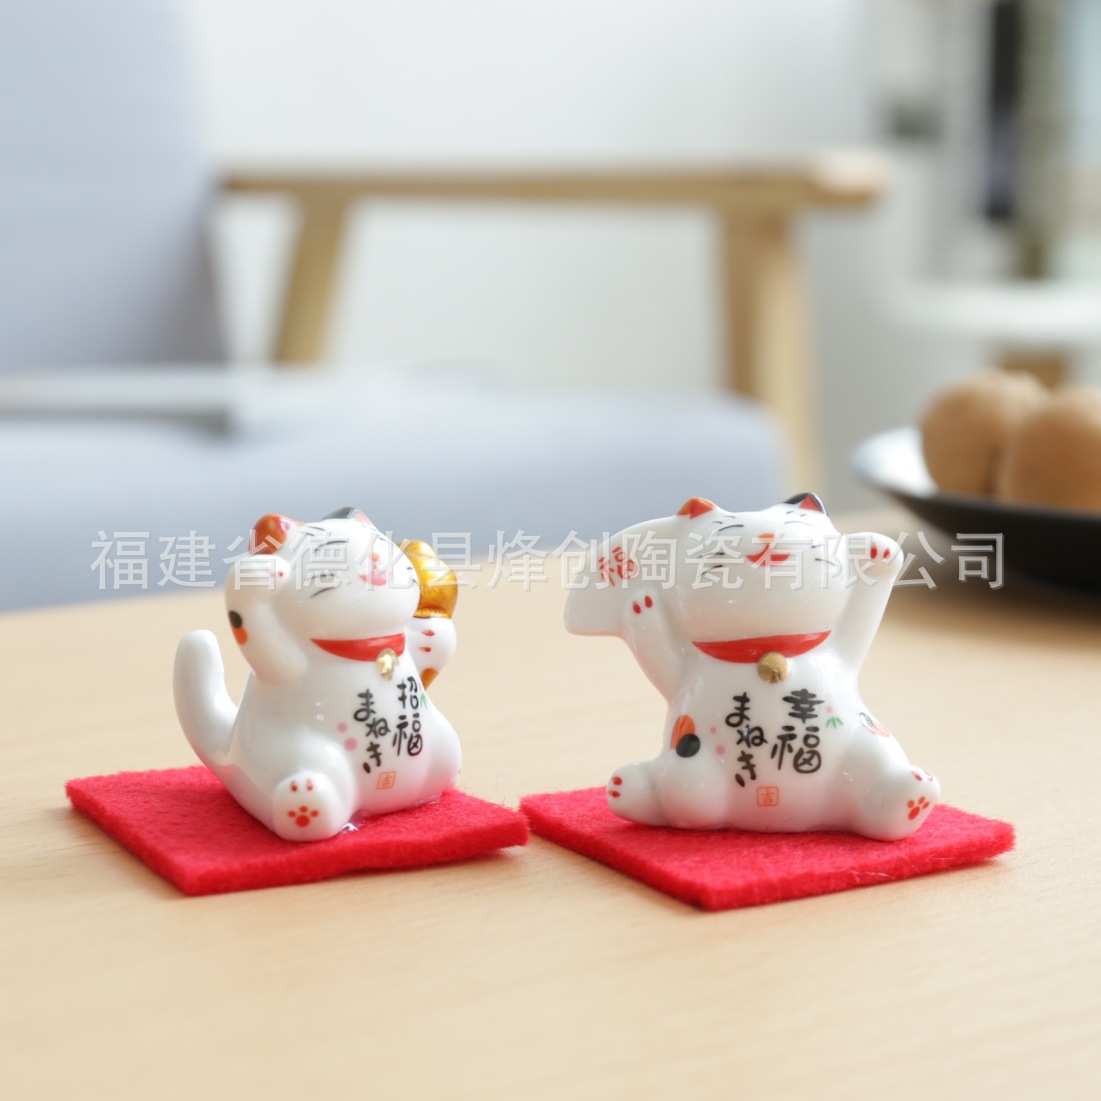 文创 新款Zakka日式杂货 超萌招福招财猫筷架 陶瓷摆件 带红布垫